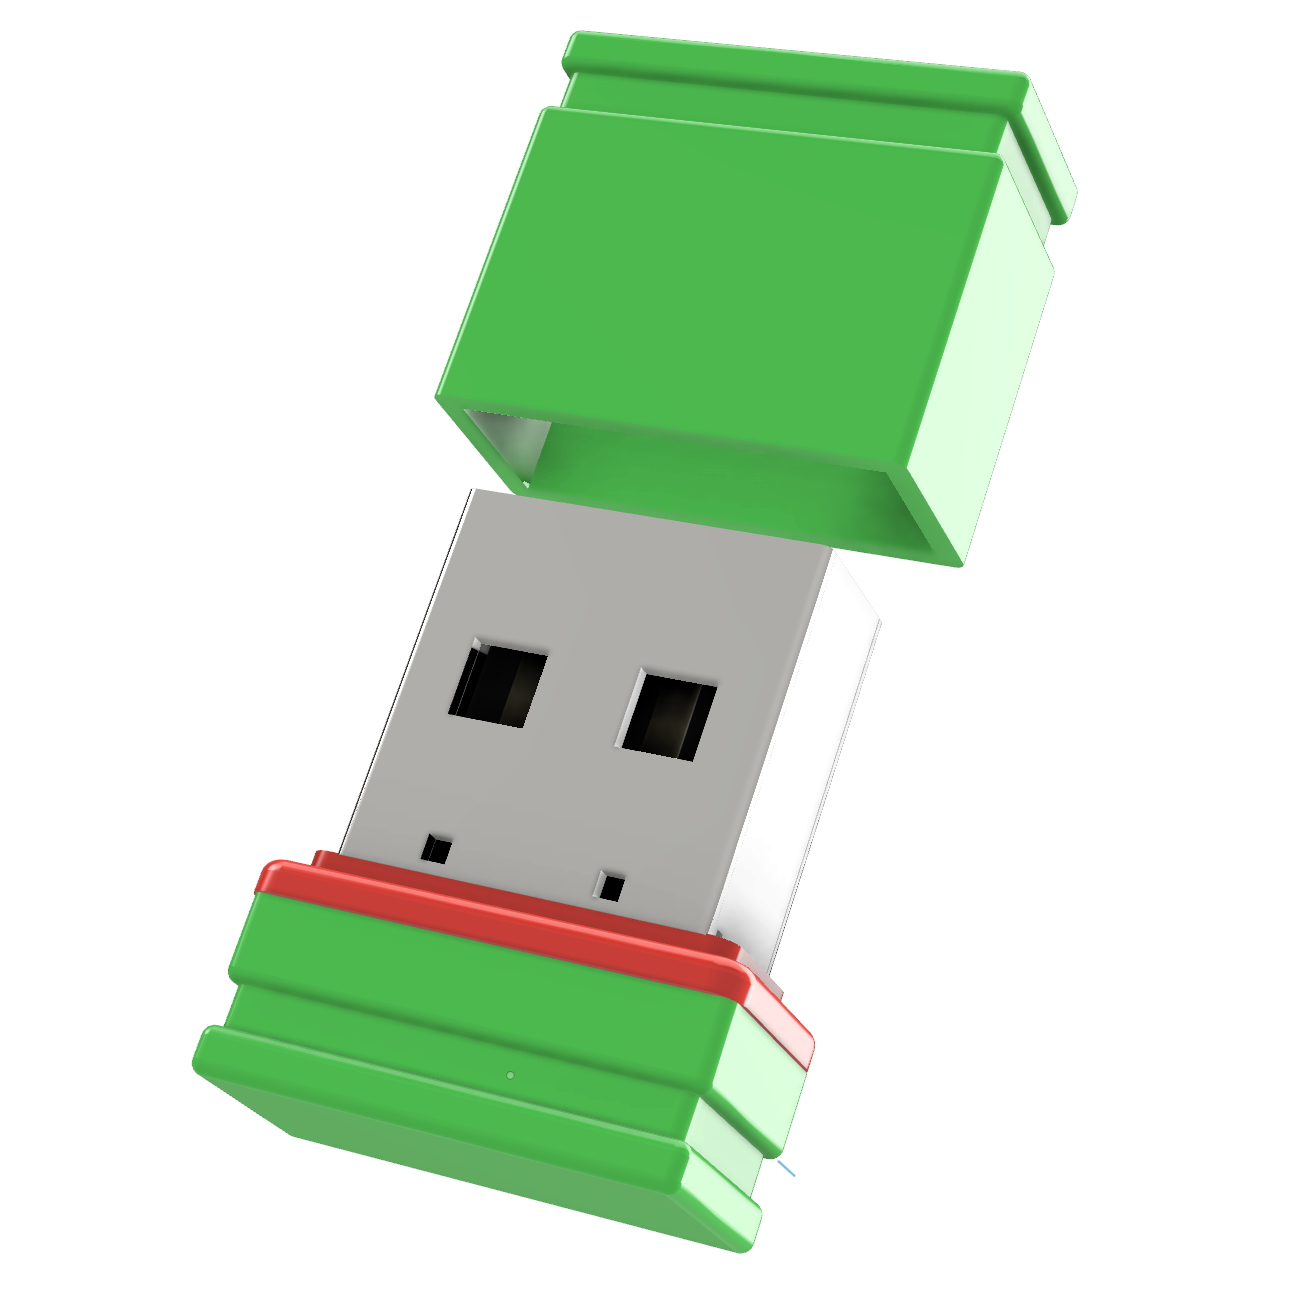 USB Mini GB) USB-Stick GERMANY (Grün/Rot, ®ULTRA 64 P1